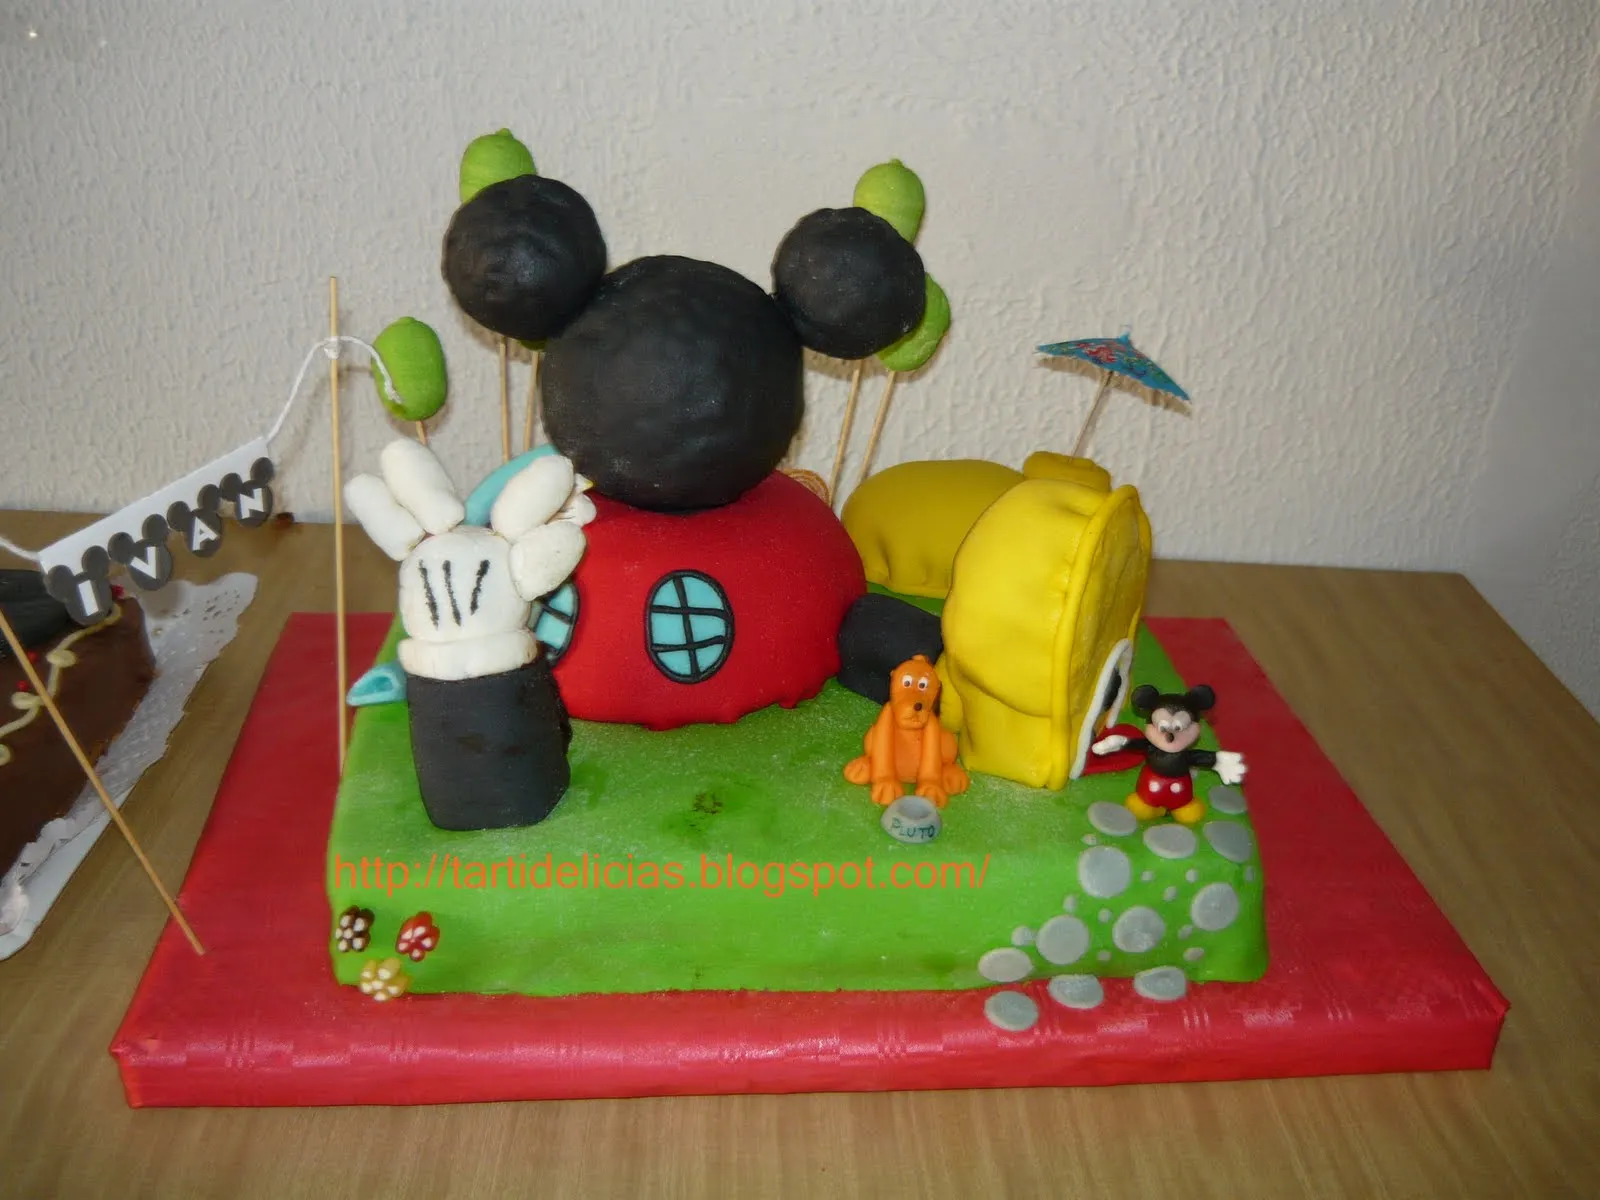 Tartidelicias: Tarta La Casa de Mickey Mouse y más...